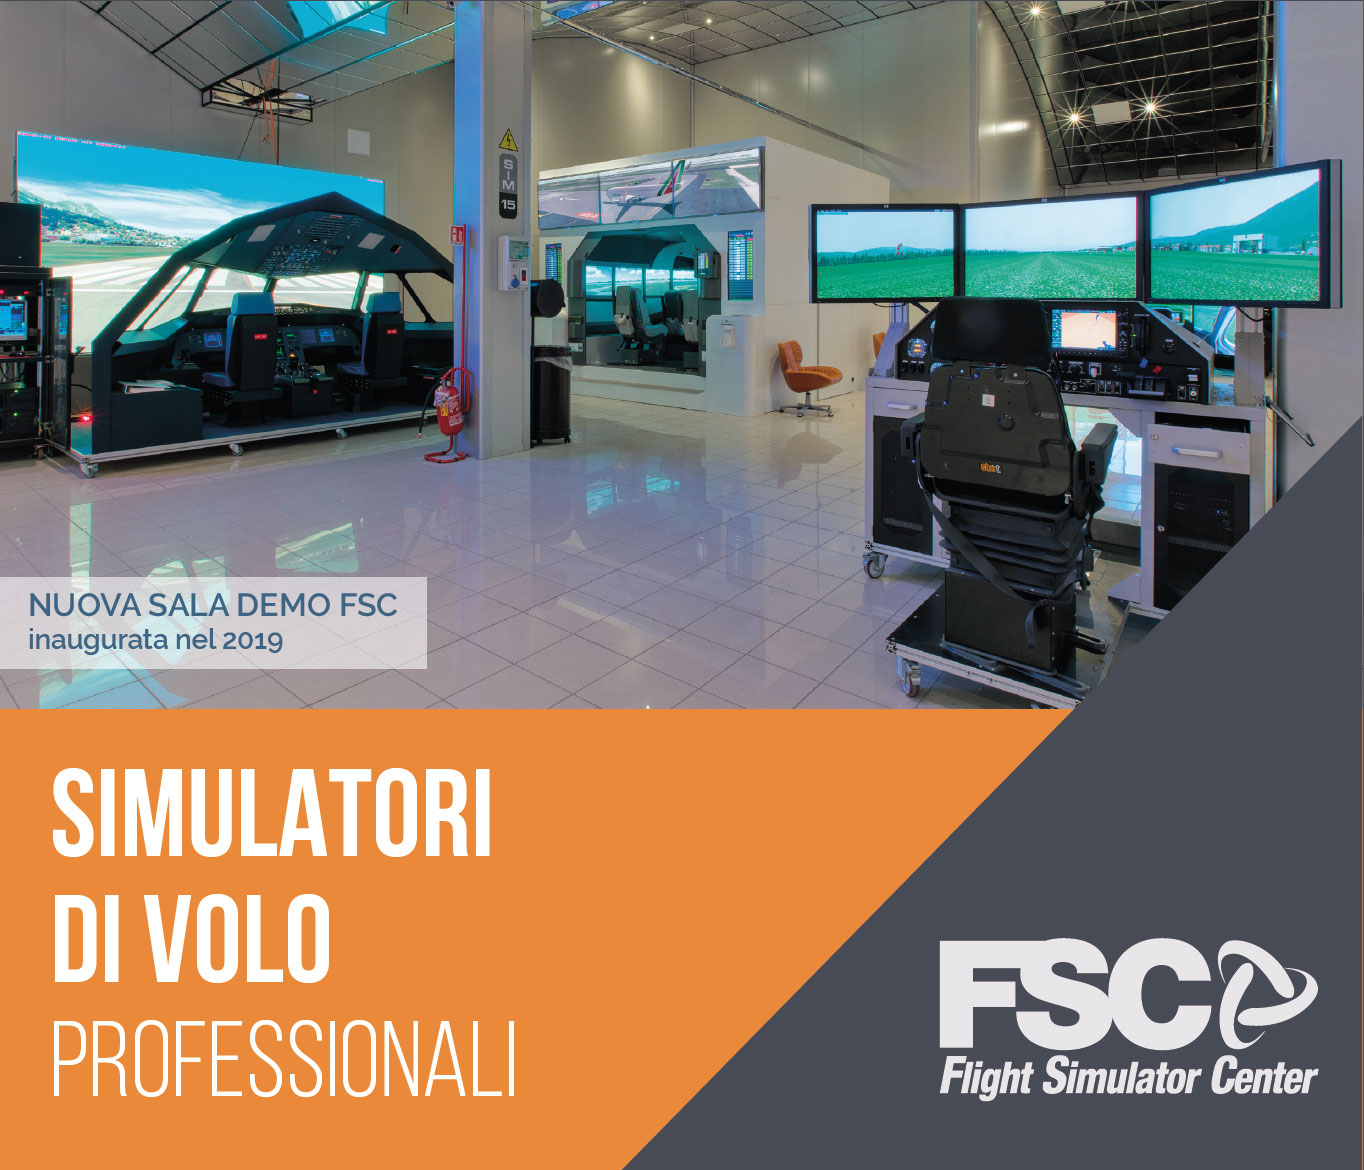 FSC-FLIGHT-SIMULATOR-CENTER-SIMULATORI-VOLO-PROFESSIONALI